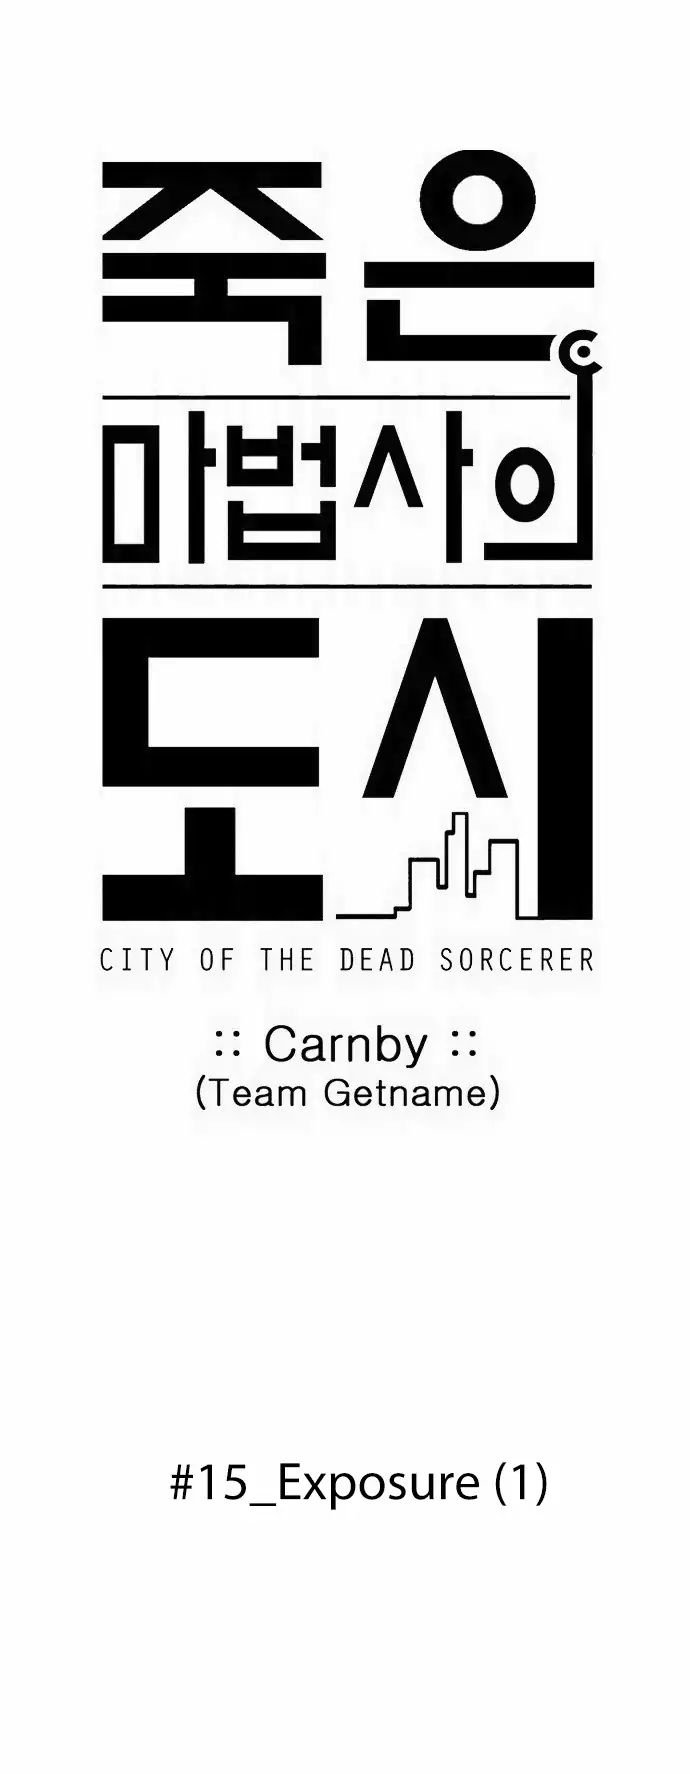 City Of Dead Sorcerer 171 7